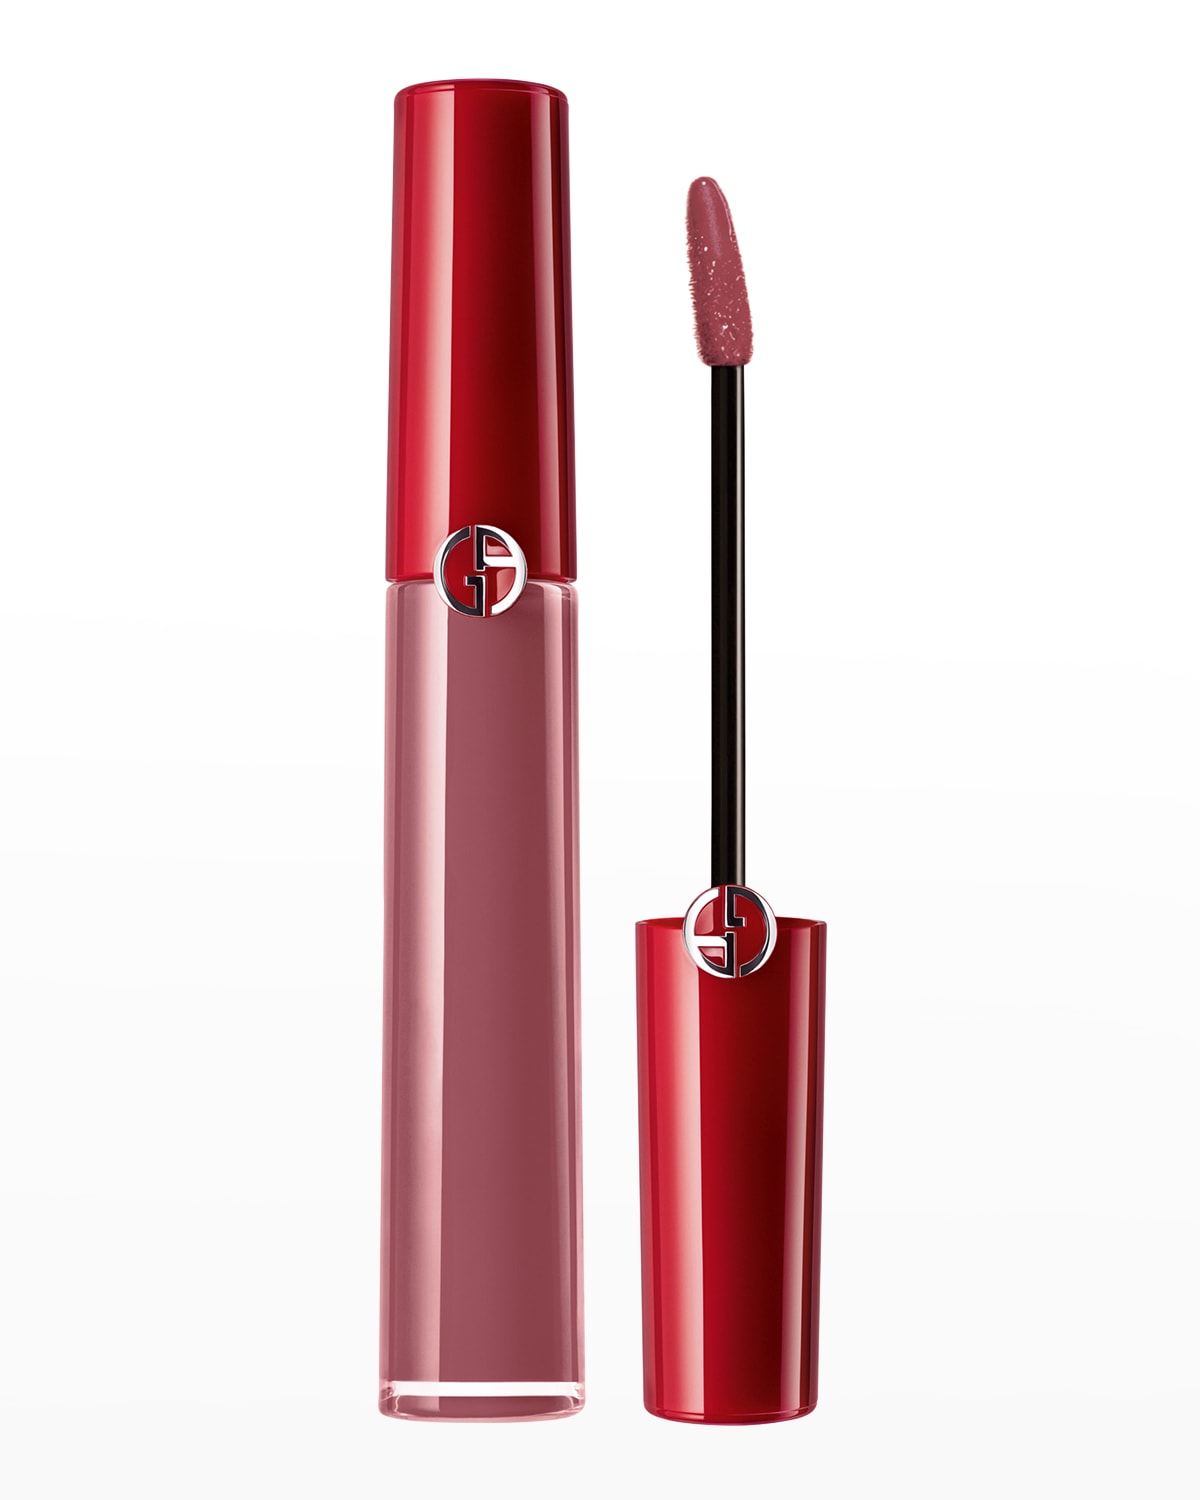 Armani Beauty Lip Maestro Liquid Lipstick In 529